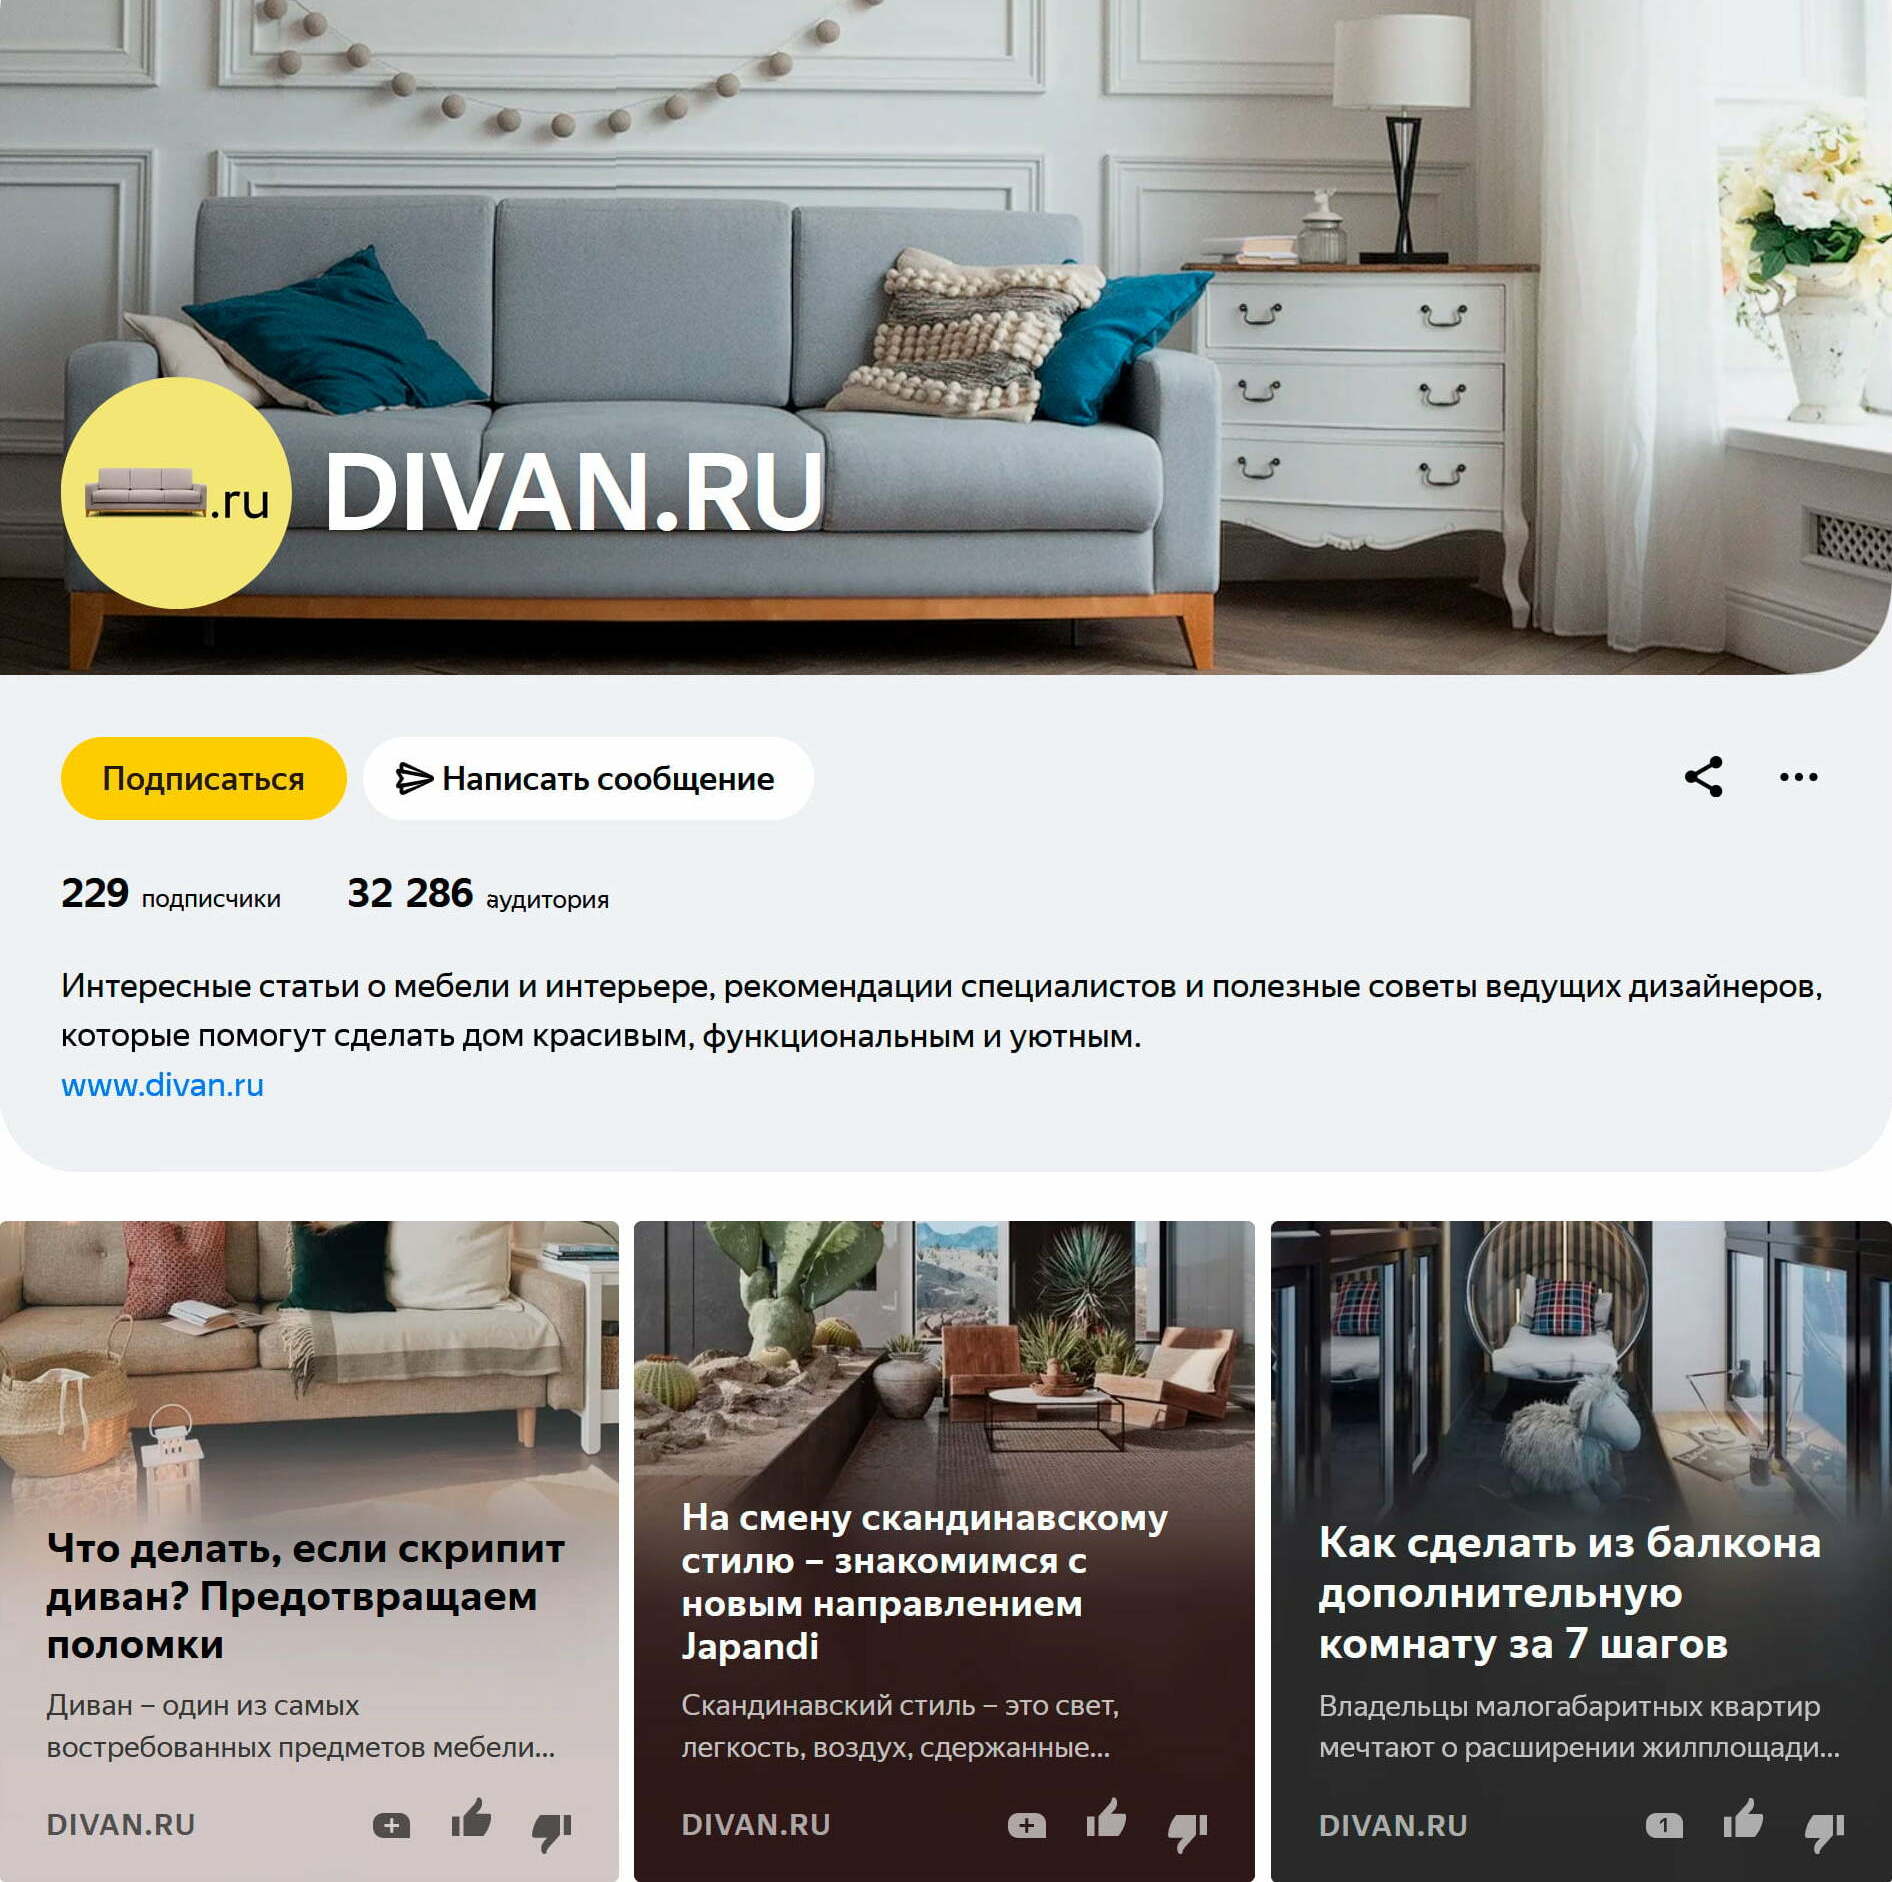 Страница divan.ru на «Яндекс.Дзен»